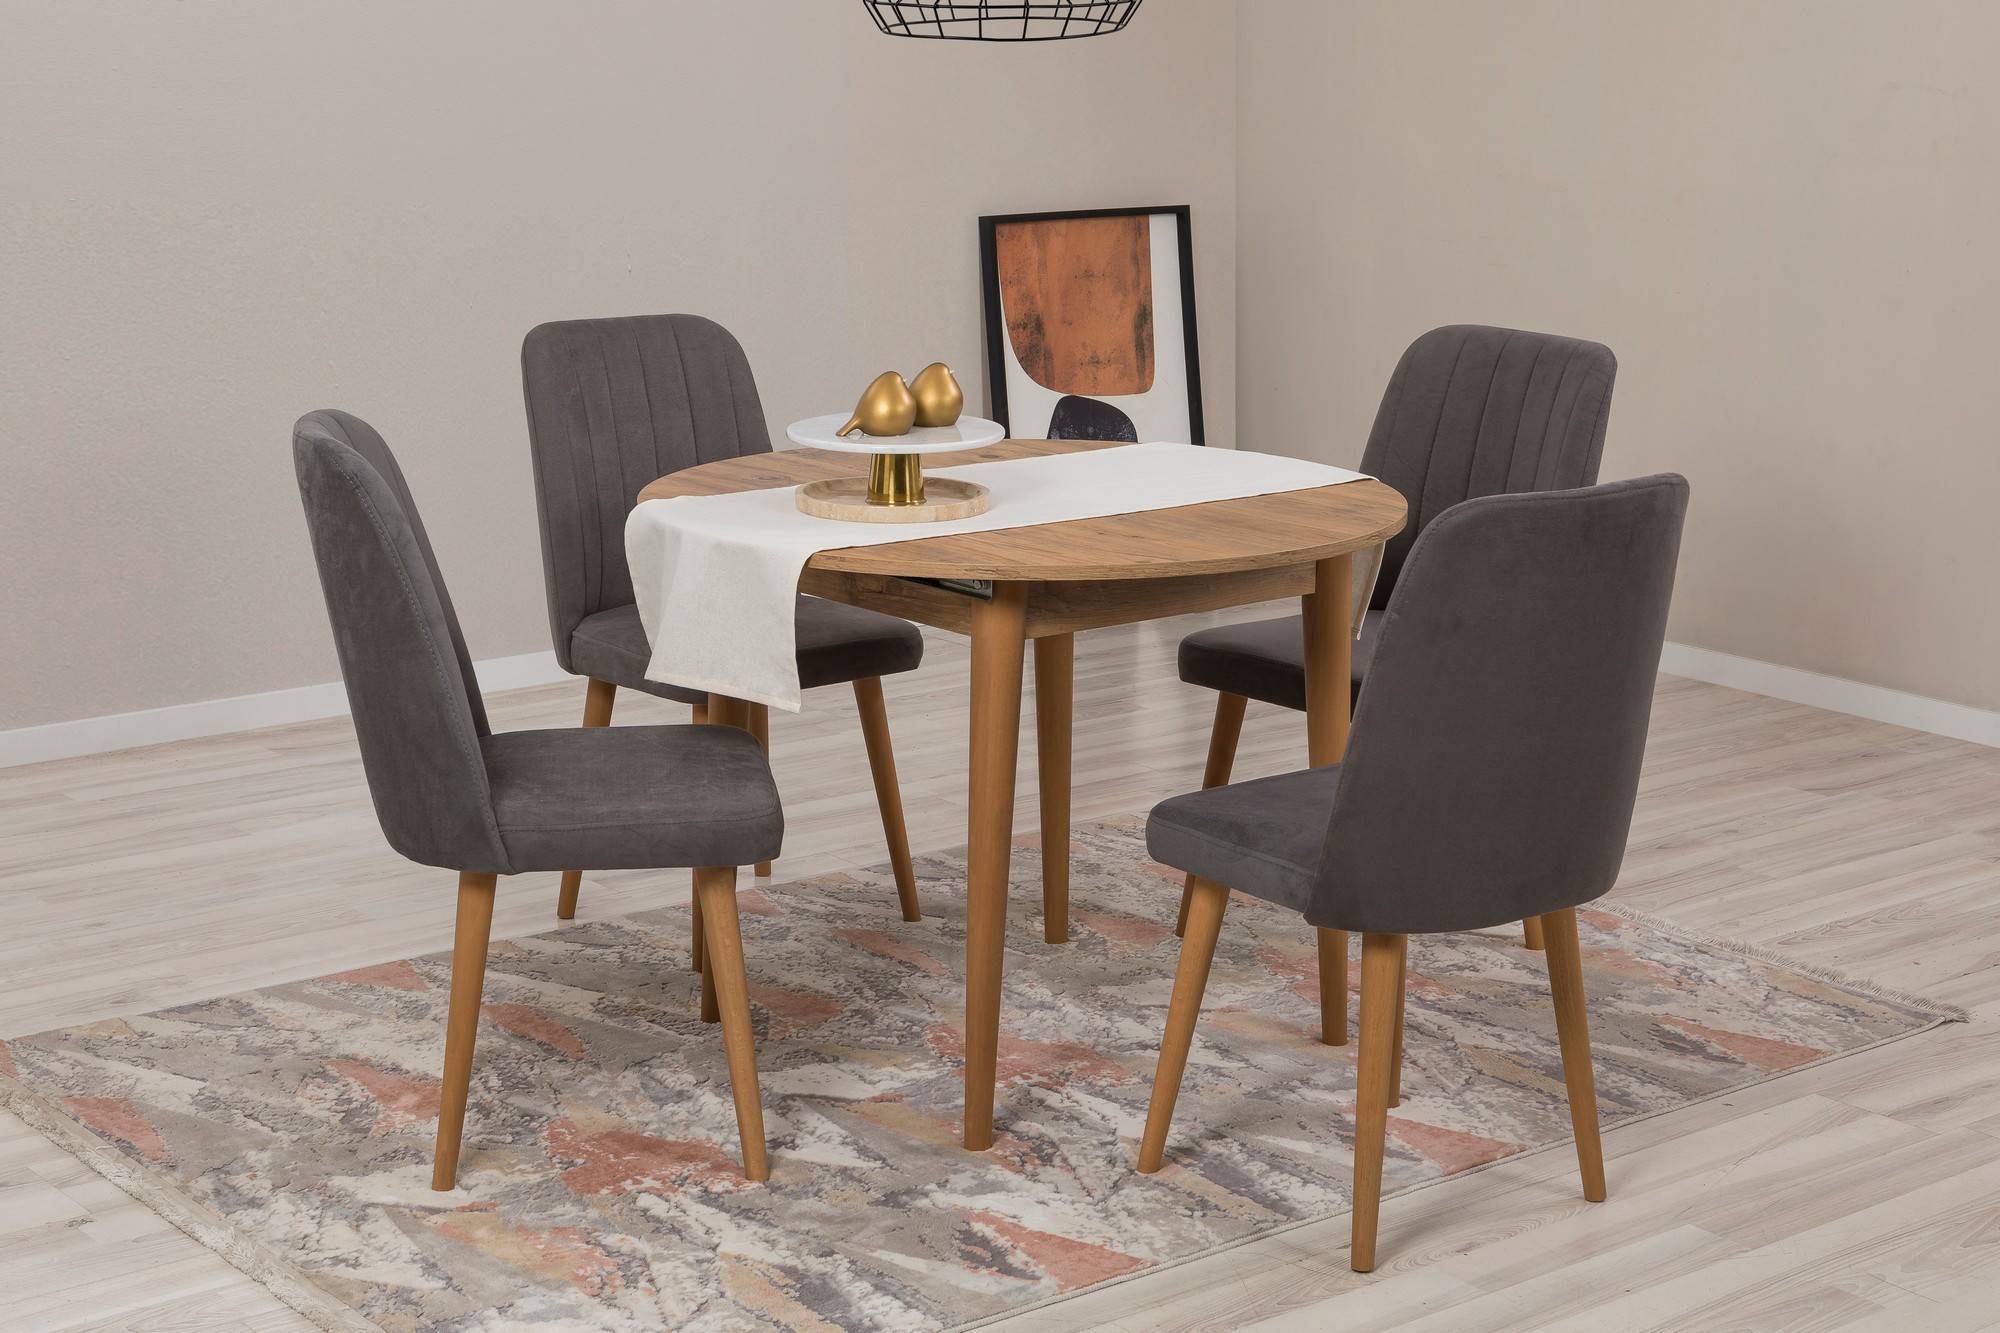 Ensemble de table ronde extensible et 4 chaises Malva en bois clair et tissu gris foncé.